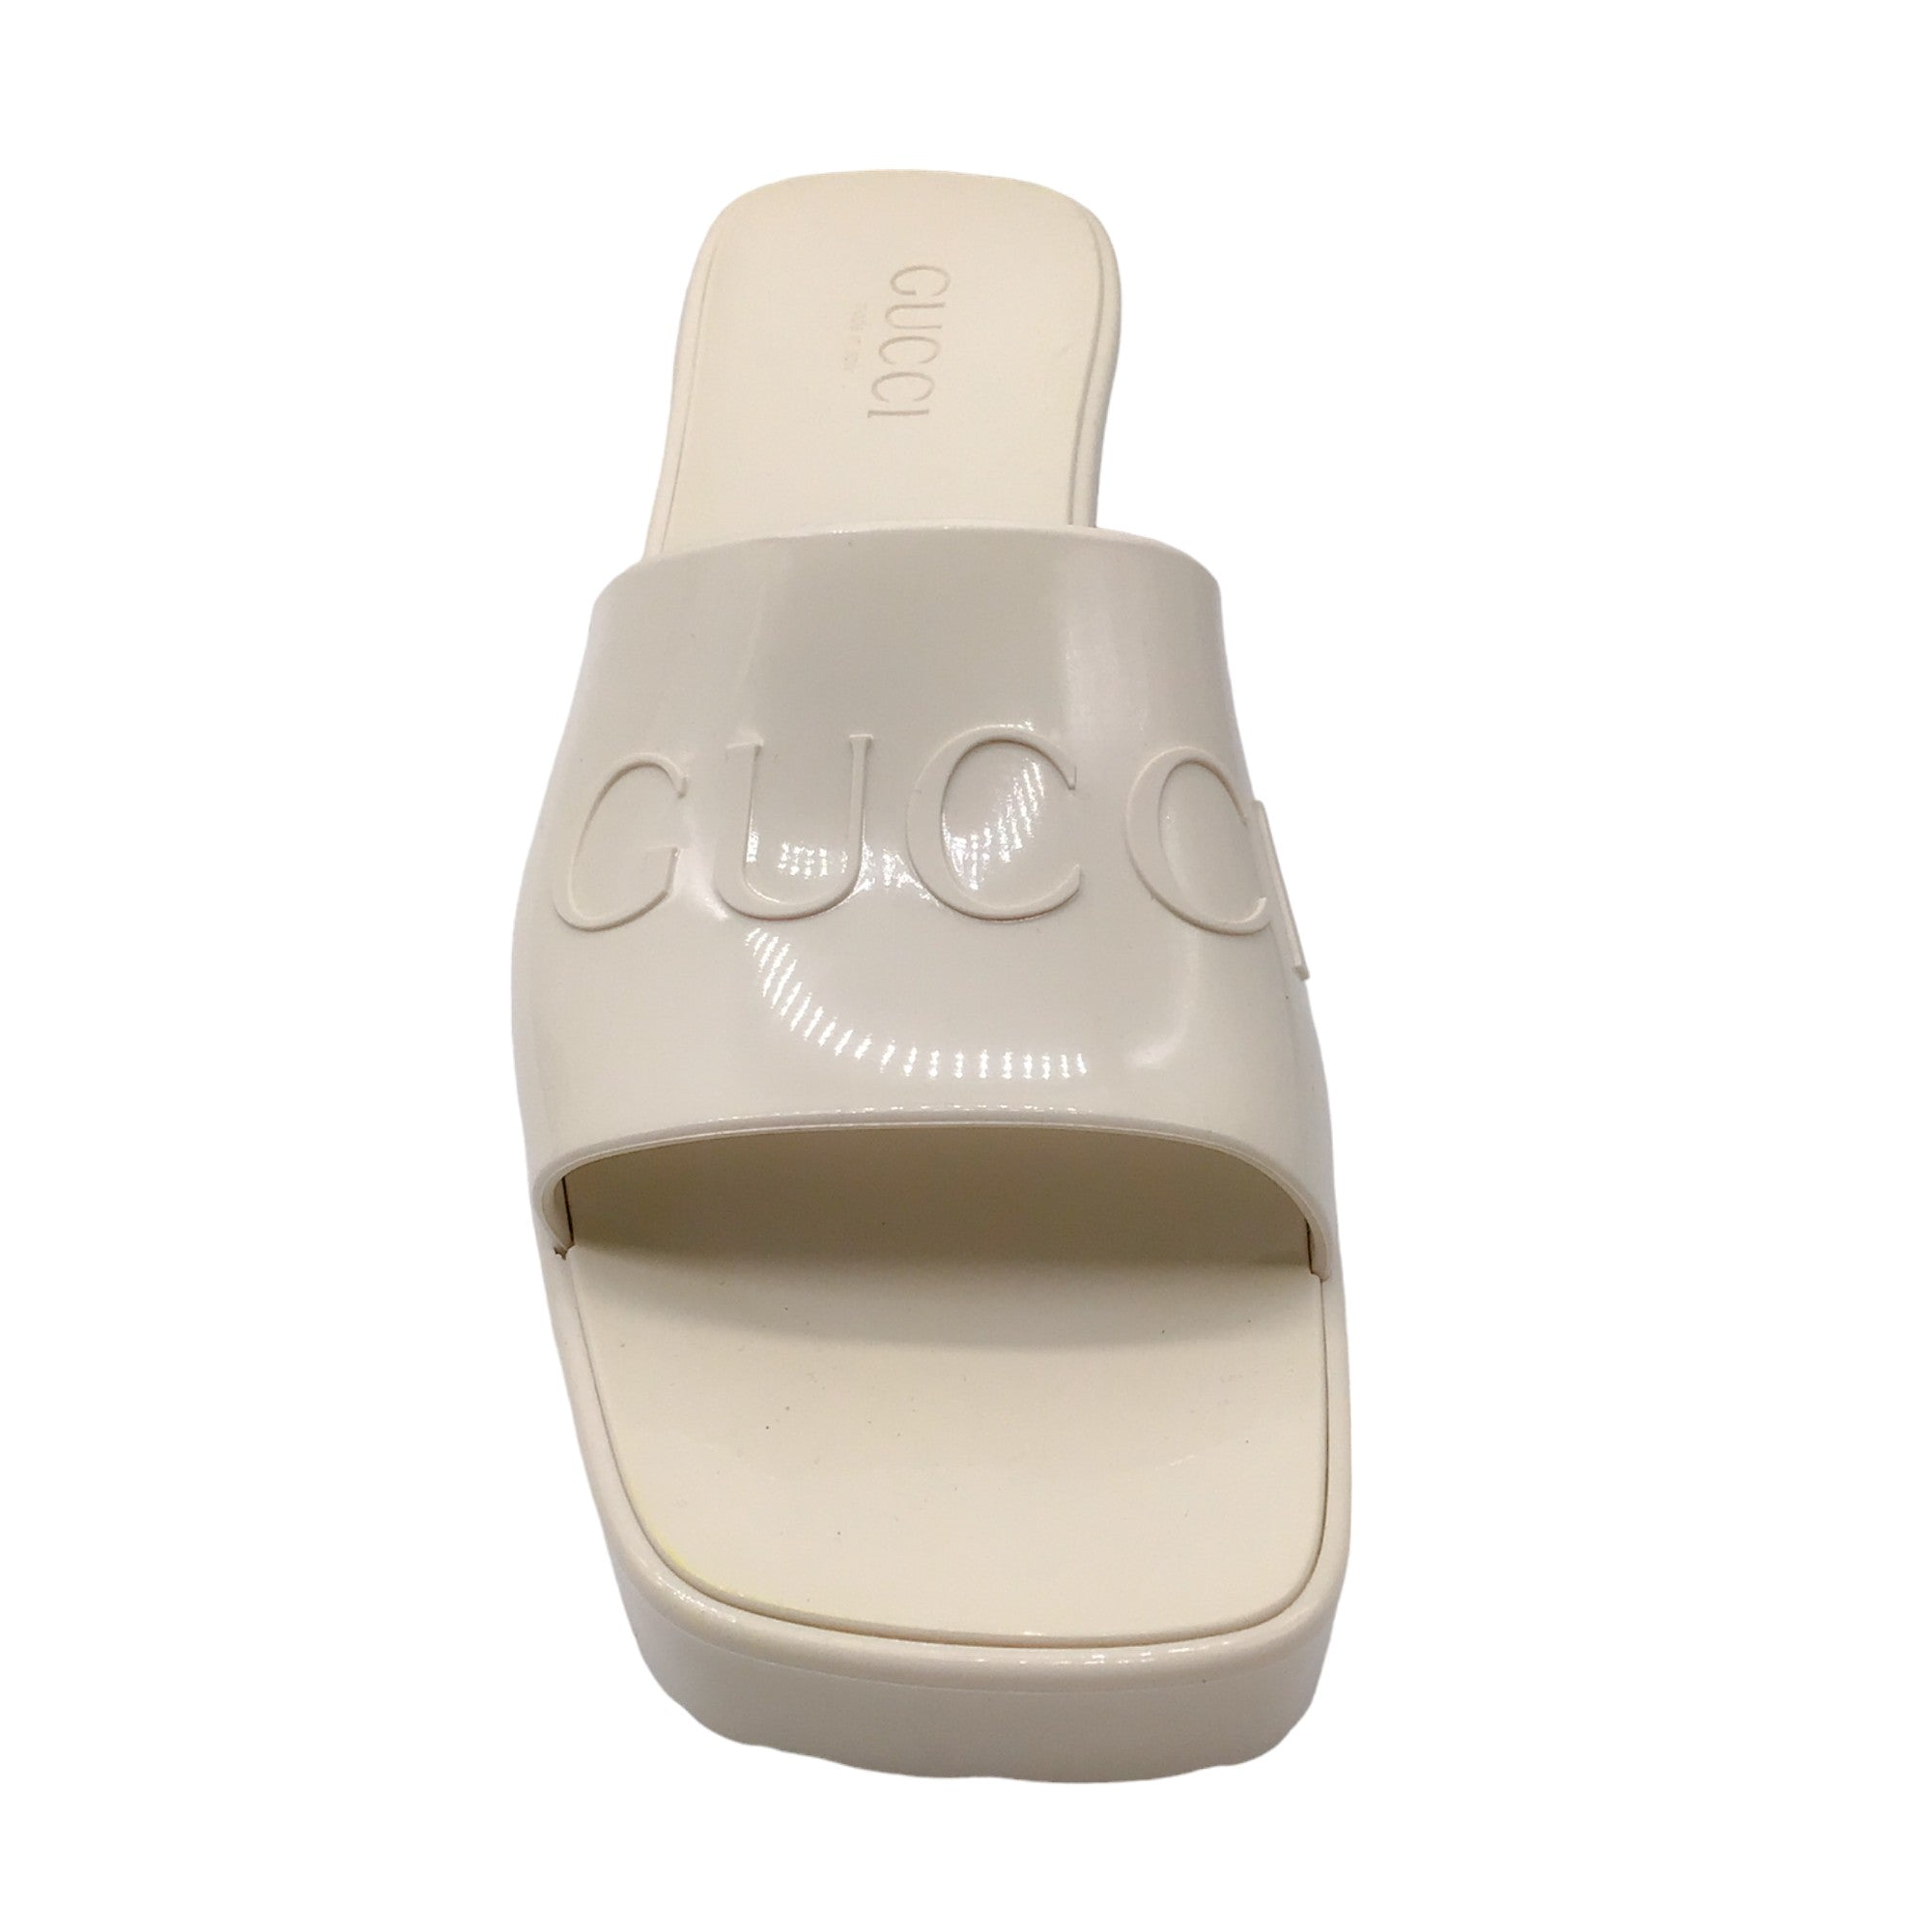 Gucci Ivory Logo Platform Block Heel Rubber Slide Sandals